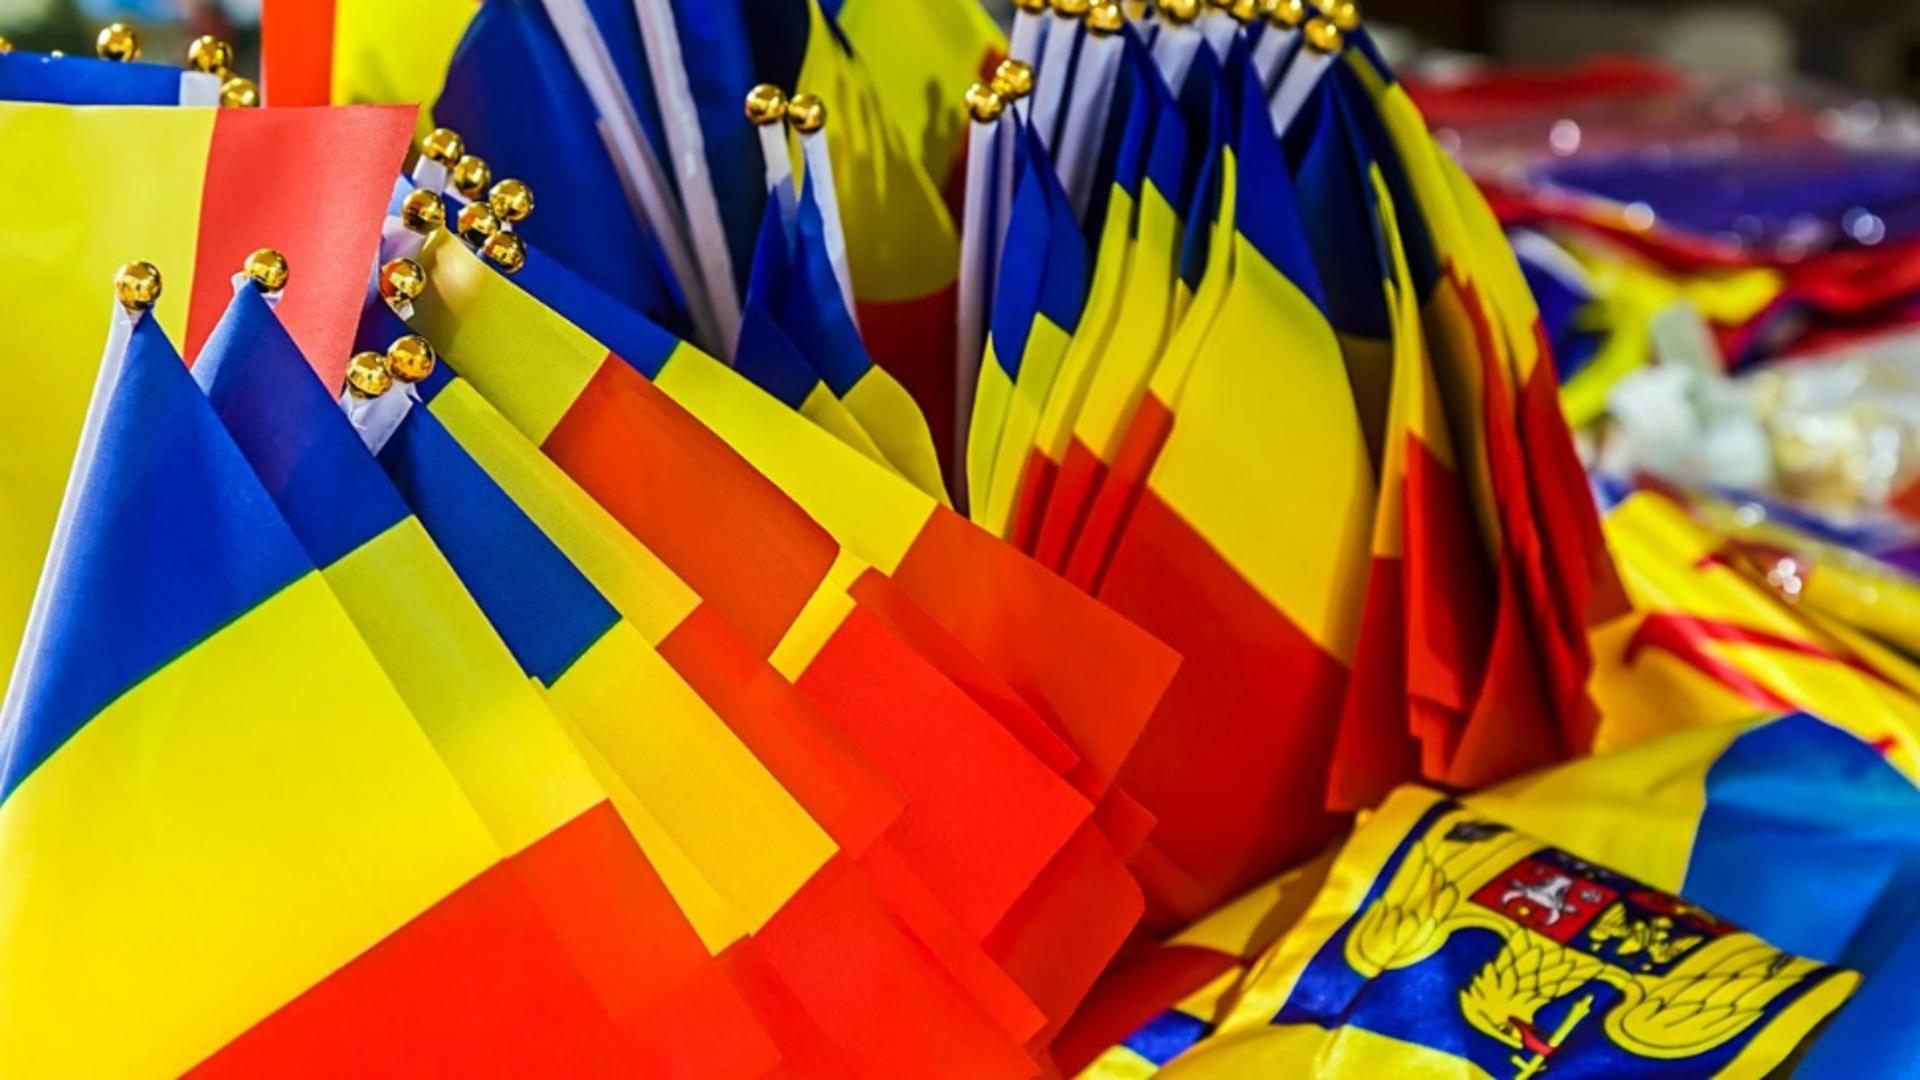 Amenzi usturătoare pentru cei care adaugă inscripţii şi simboluri ilegale pe drapelul României. Foto: Profimedia